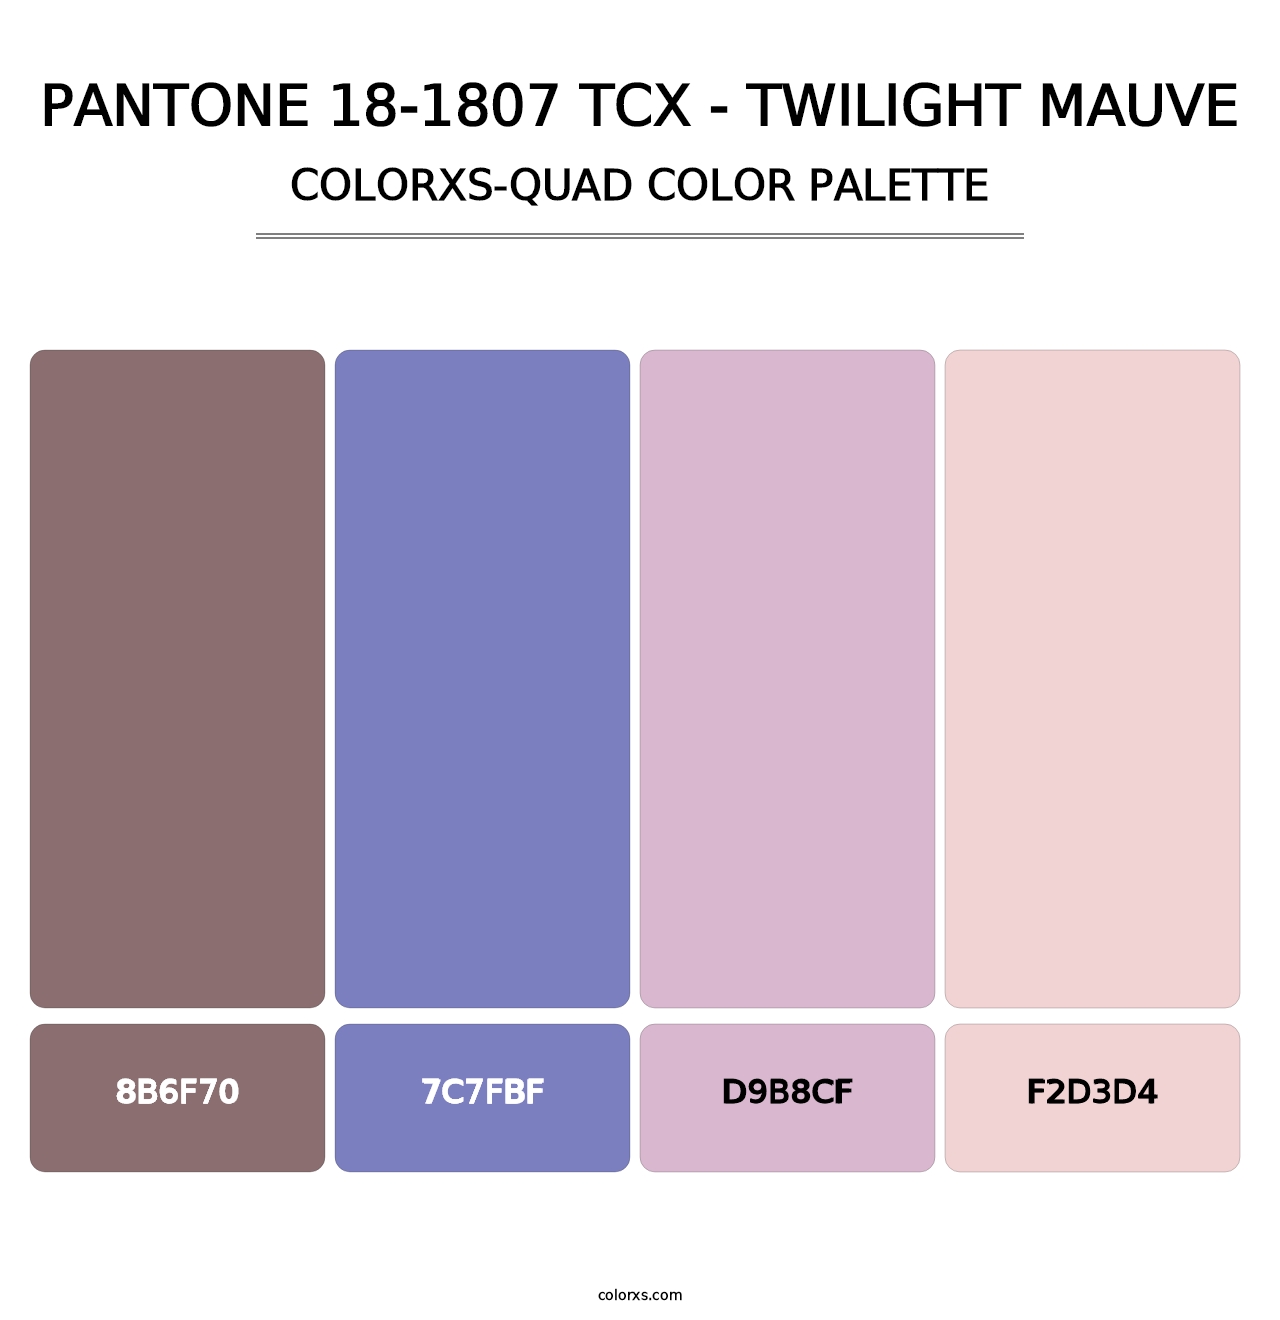 PANTONE 18-1807 TCX - Twilight Mauve - Colorxs Quad Palette